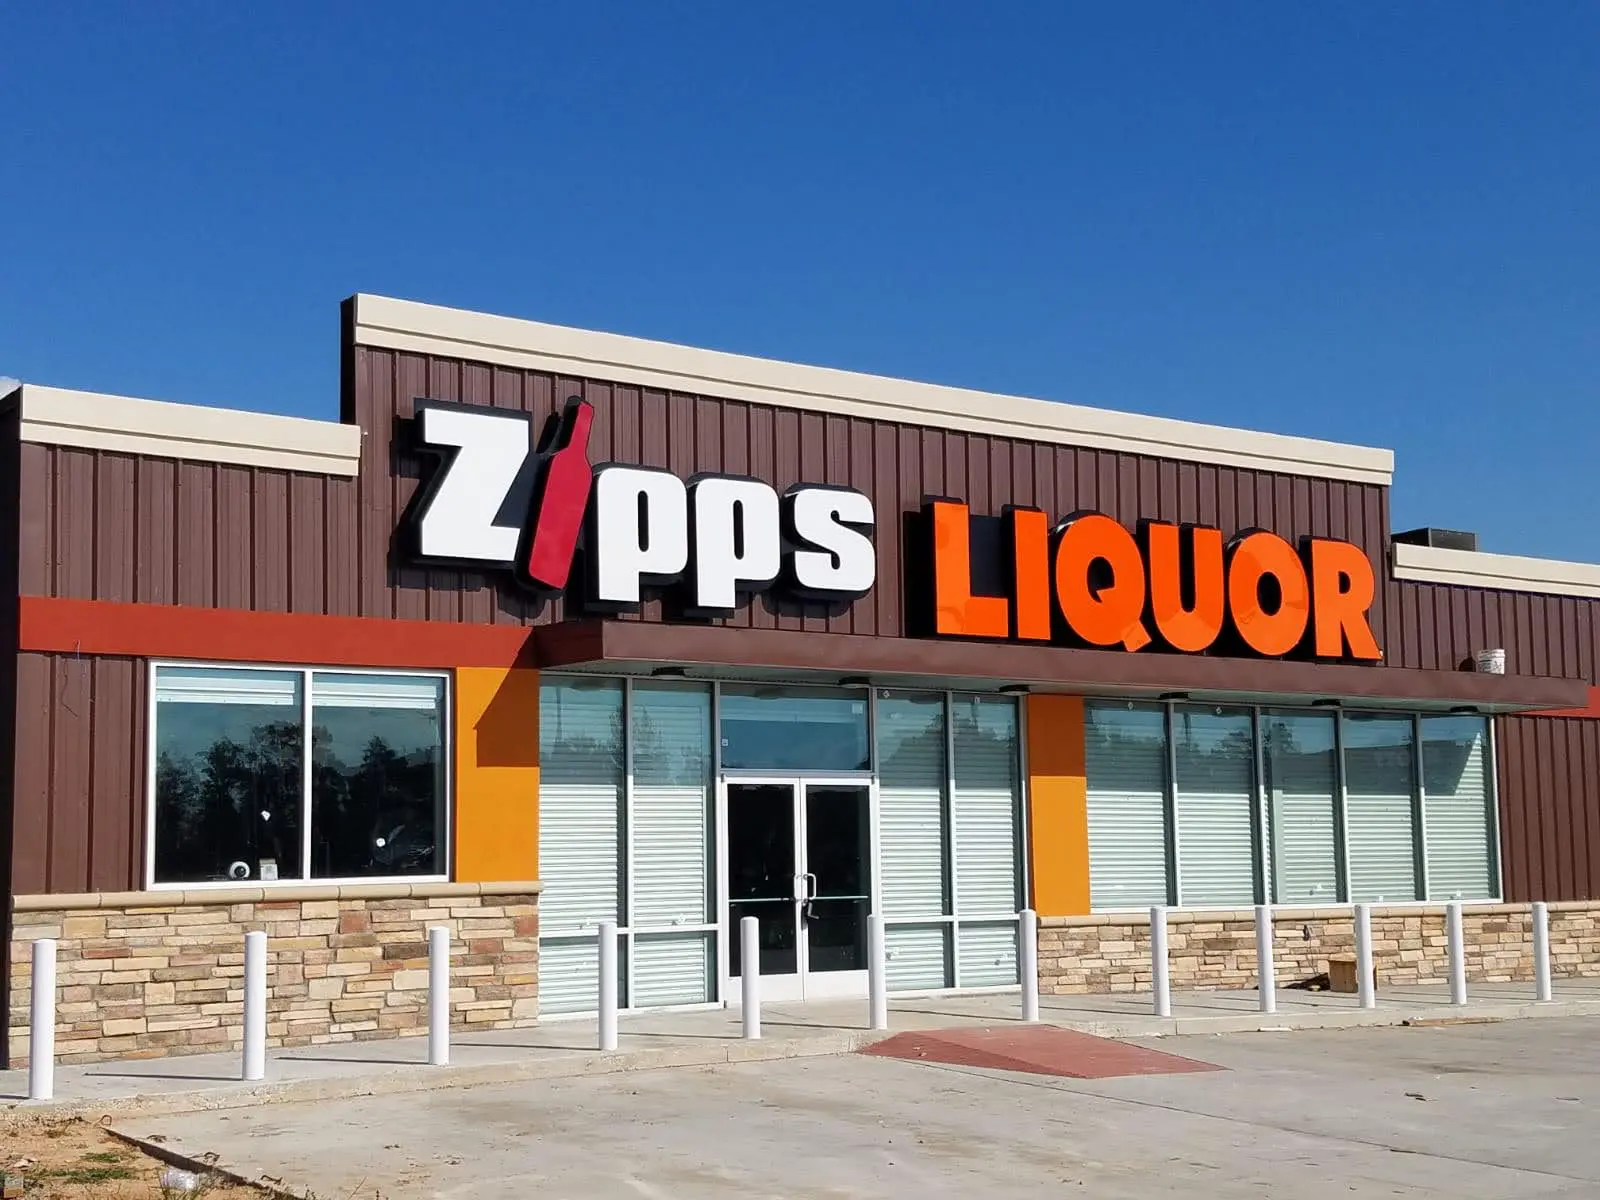 Zipps Liquor Sign